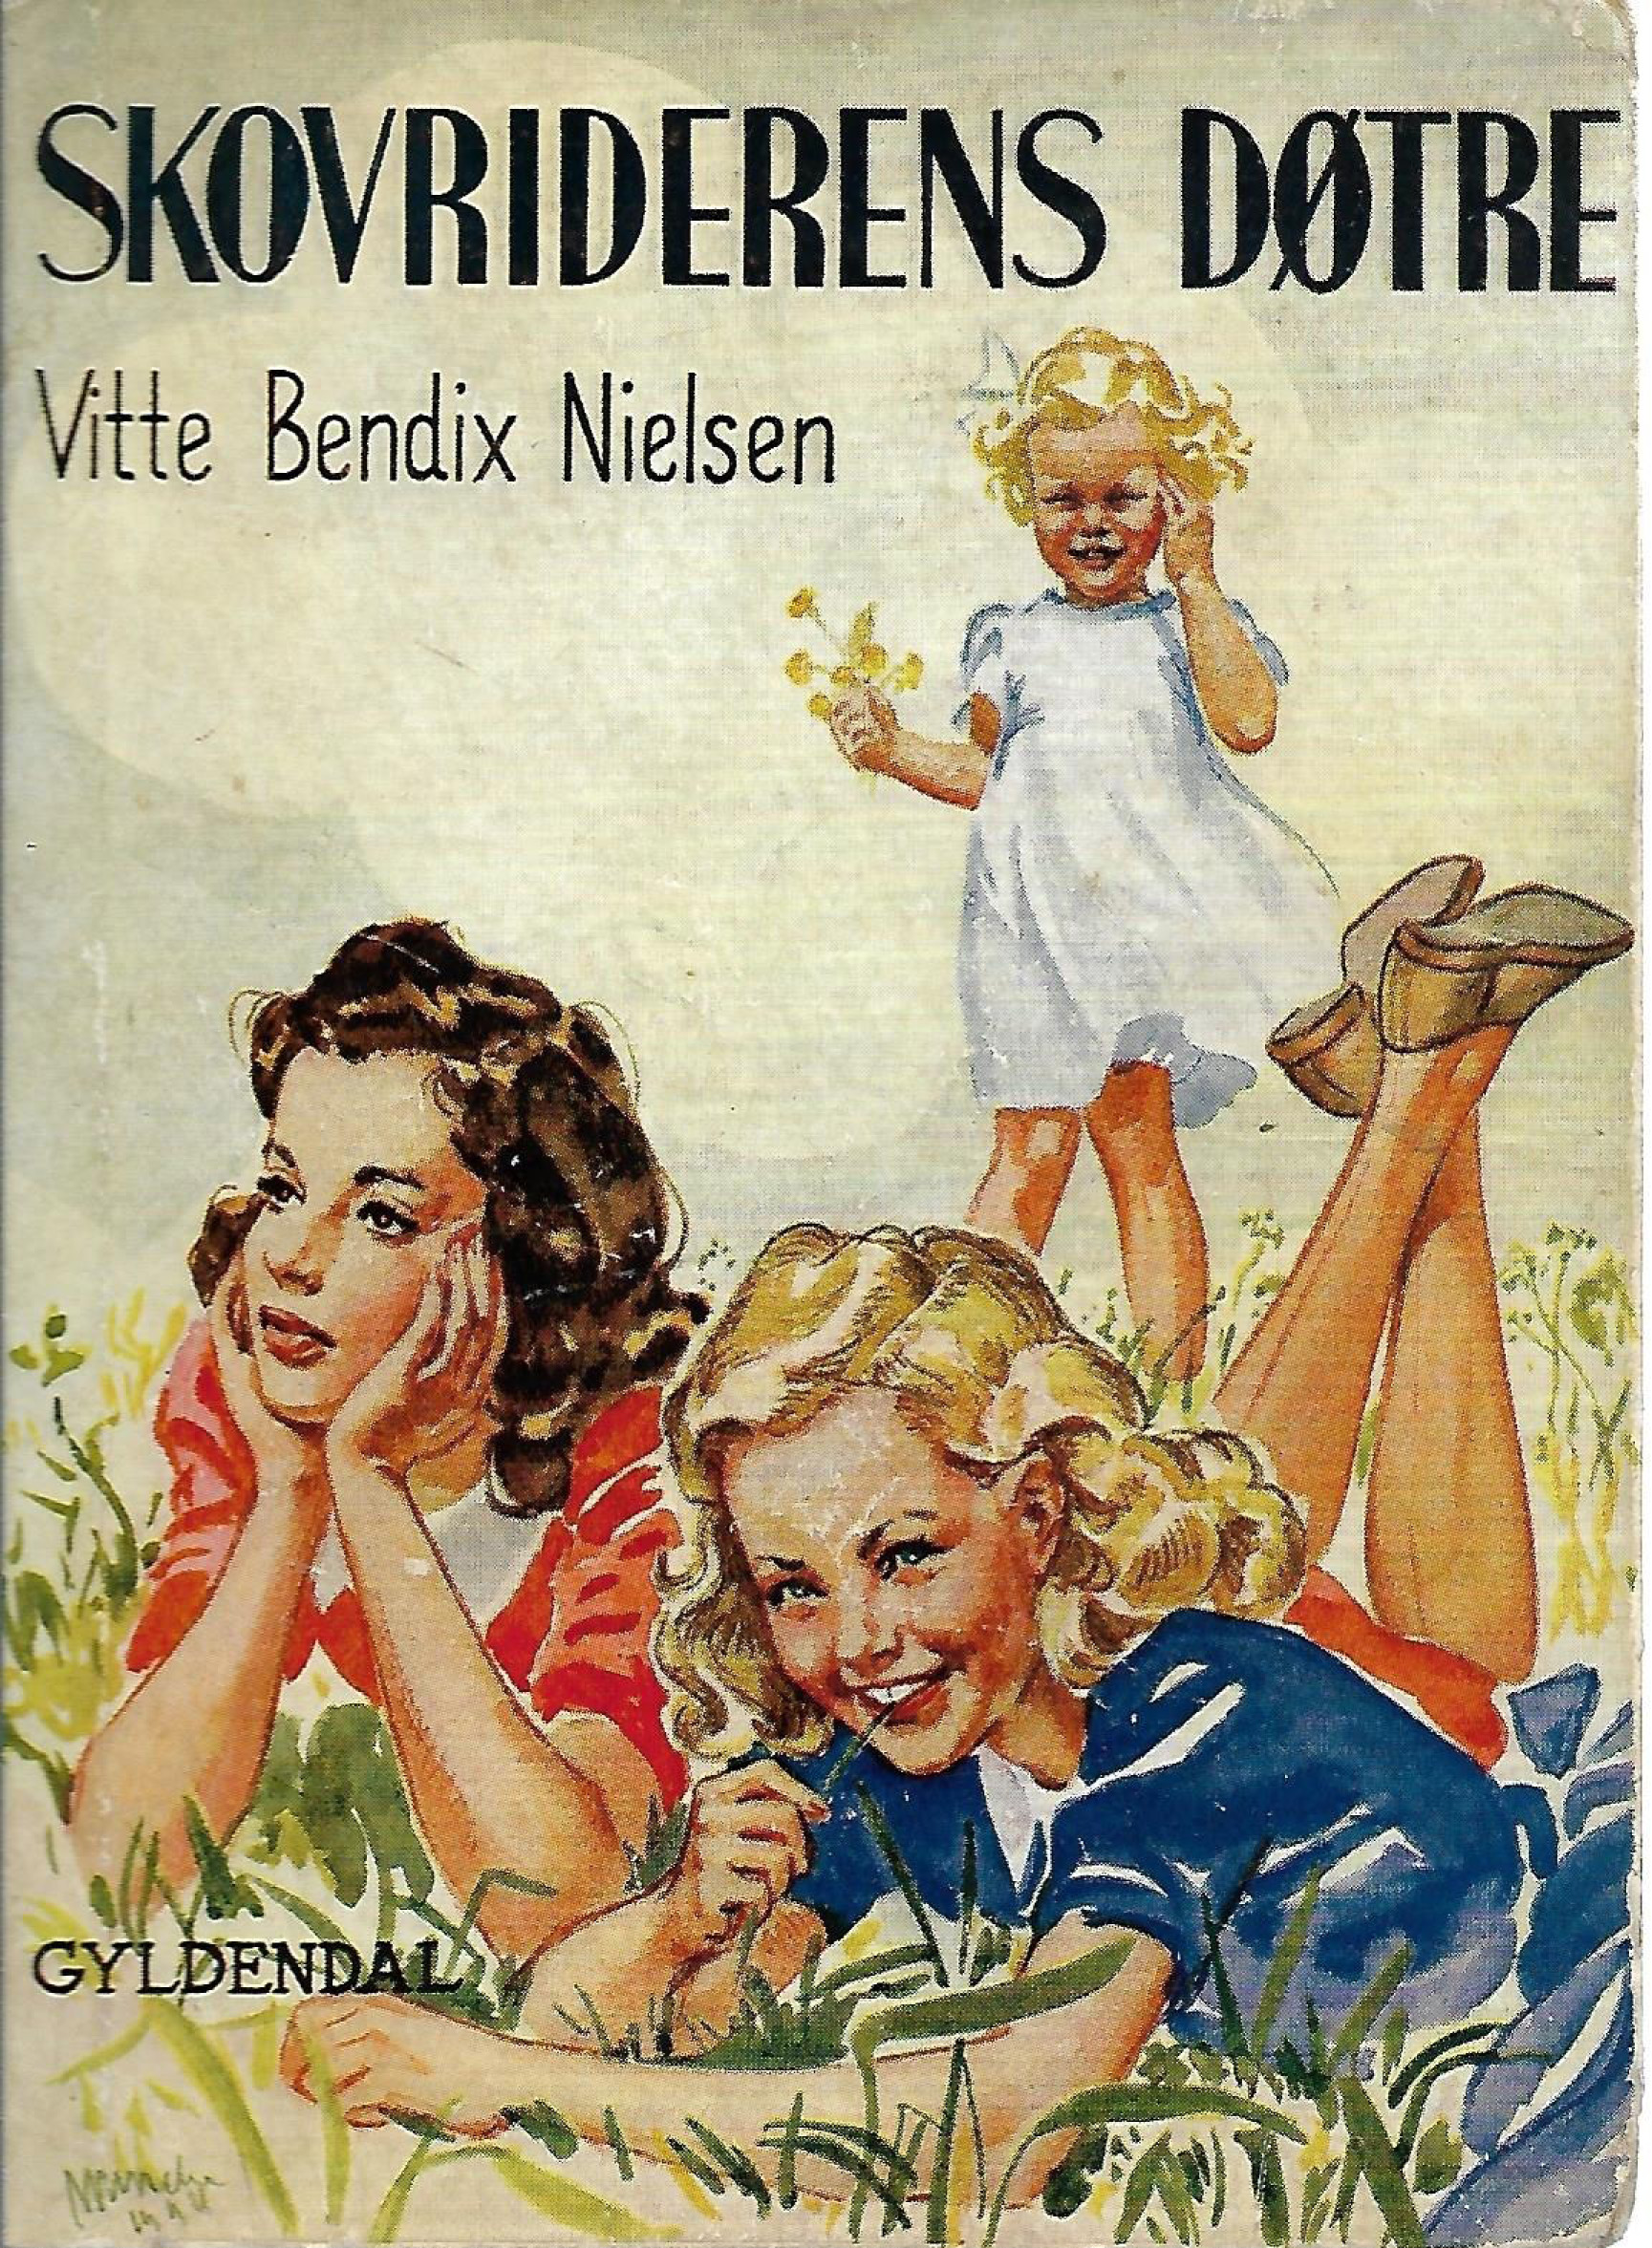 skovriderens døtre - Vitte Bendix Nielsen 1943-1